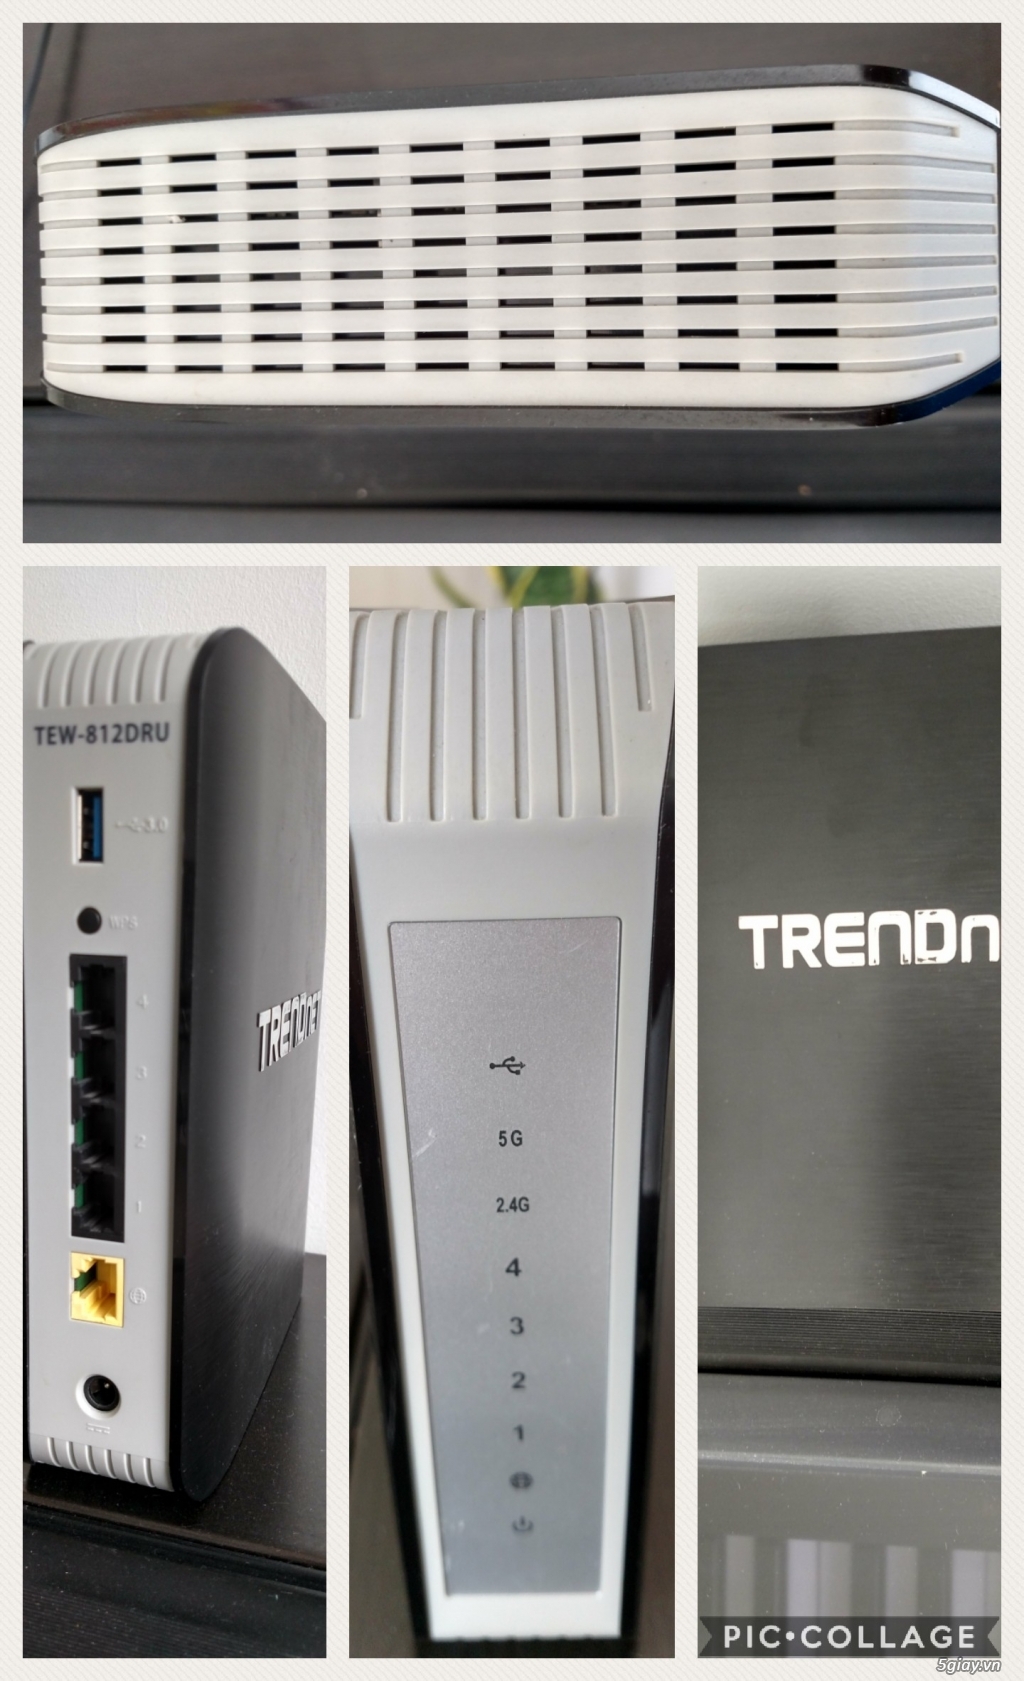 Wifi cao cấp Trendnet, tốc độ thần gió 1750Mbps, chuẩn AC